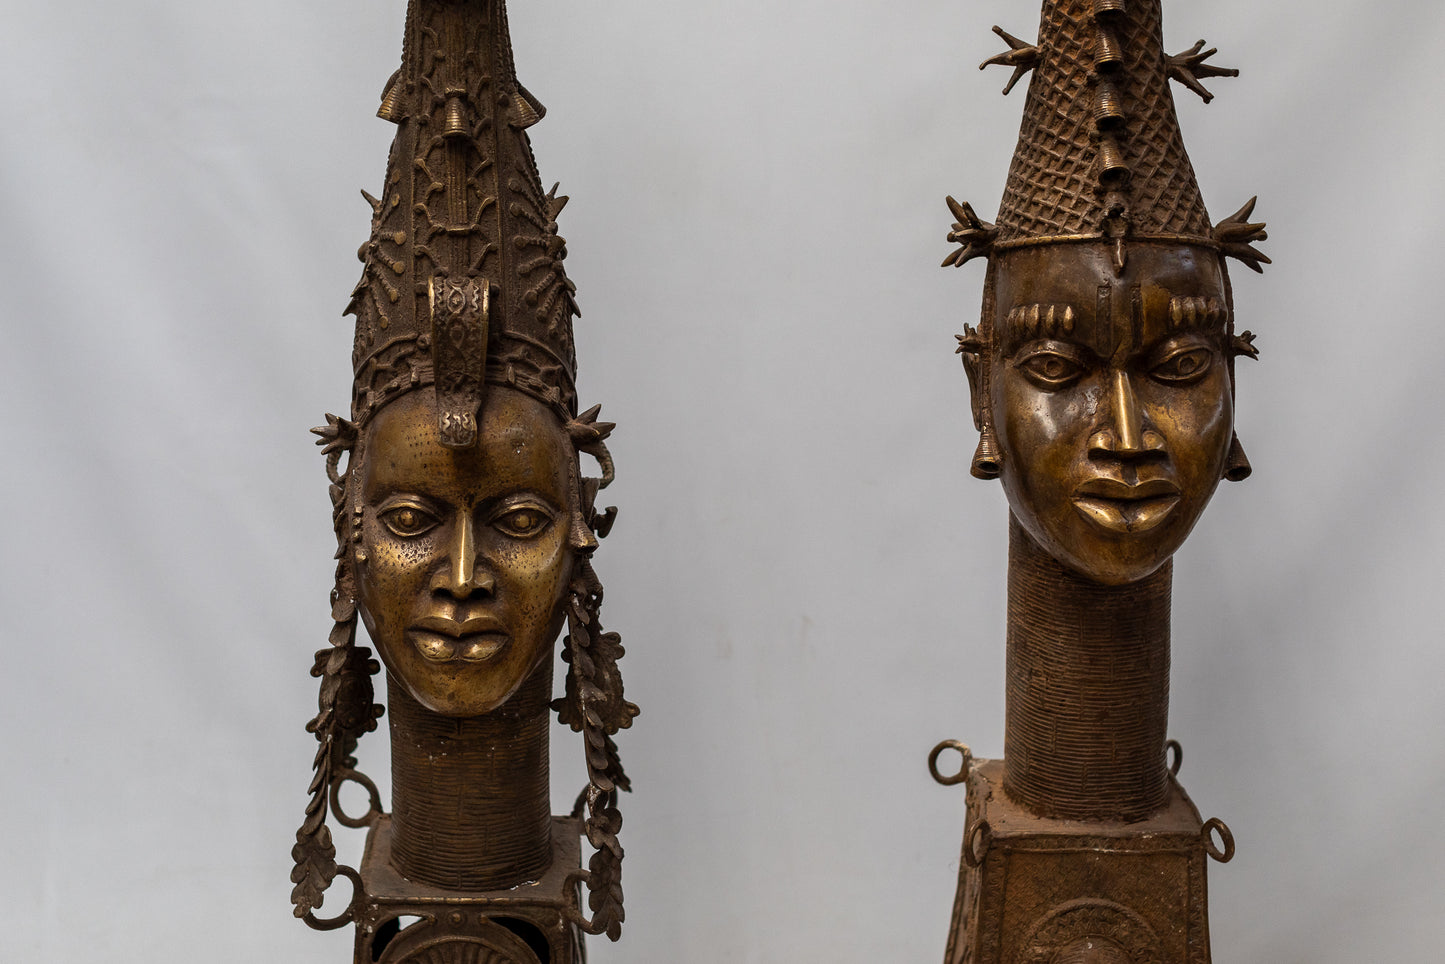 Cabeza Ife Chiquide - País: Nigeria  Material: Aleación de bronce  Medidas: 28X28X133cm